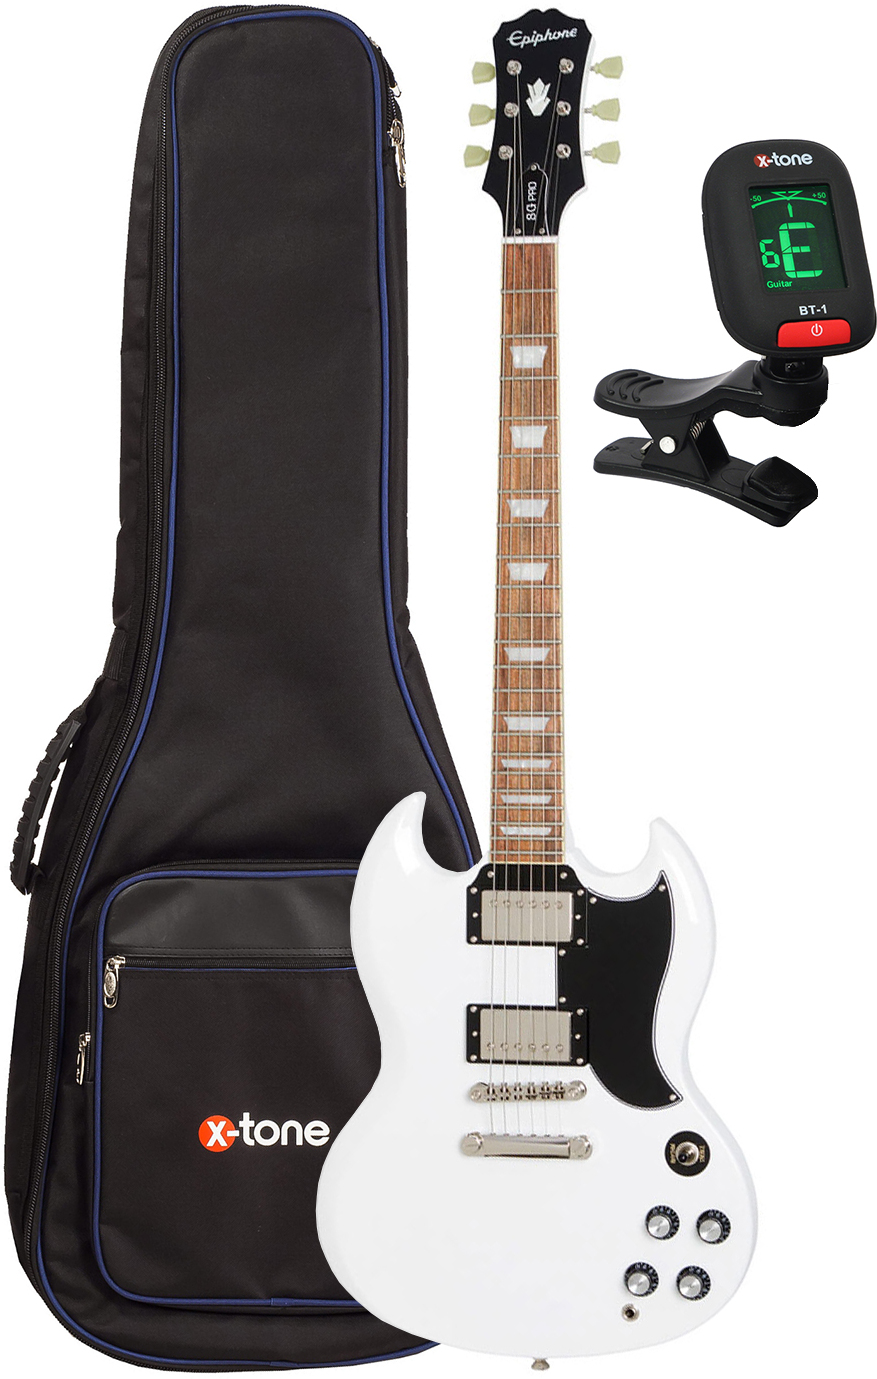 Epiphone G-400 Pro + X-tone 2015 Ele-bk + X-tone 3110 - Alpine White - Elektrische gitaar set - Main picture